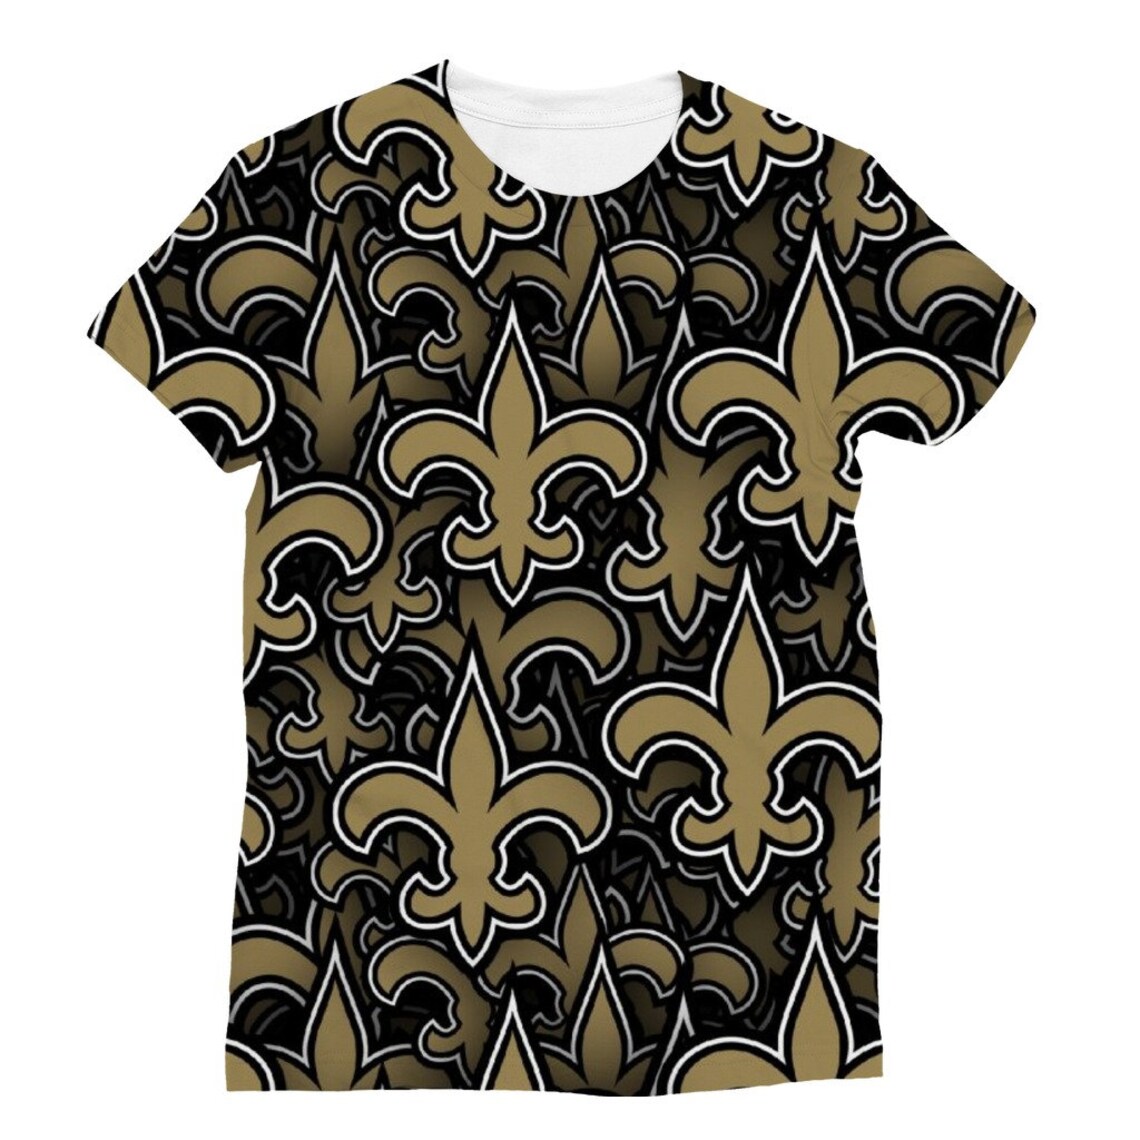 New Orleans Saints Classic Sublimation Women's T-Shirt | Etsy